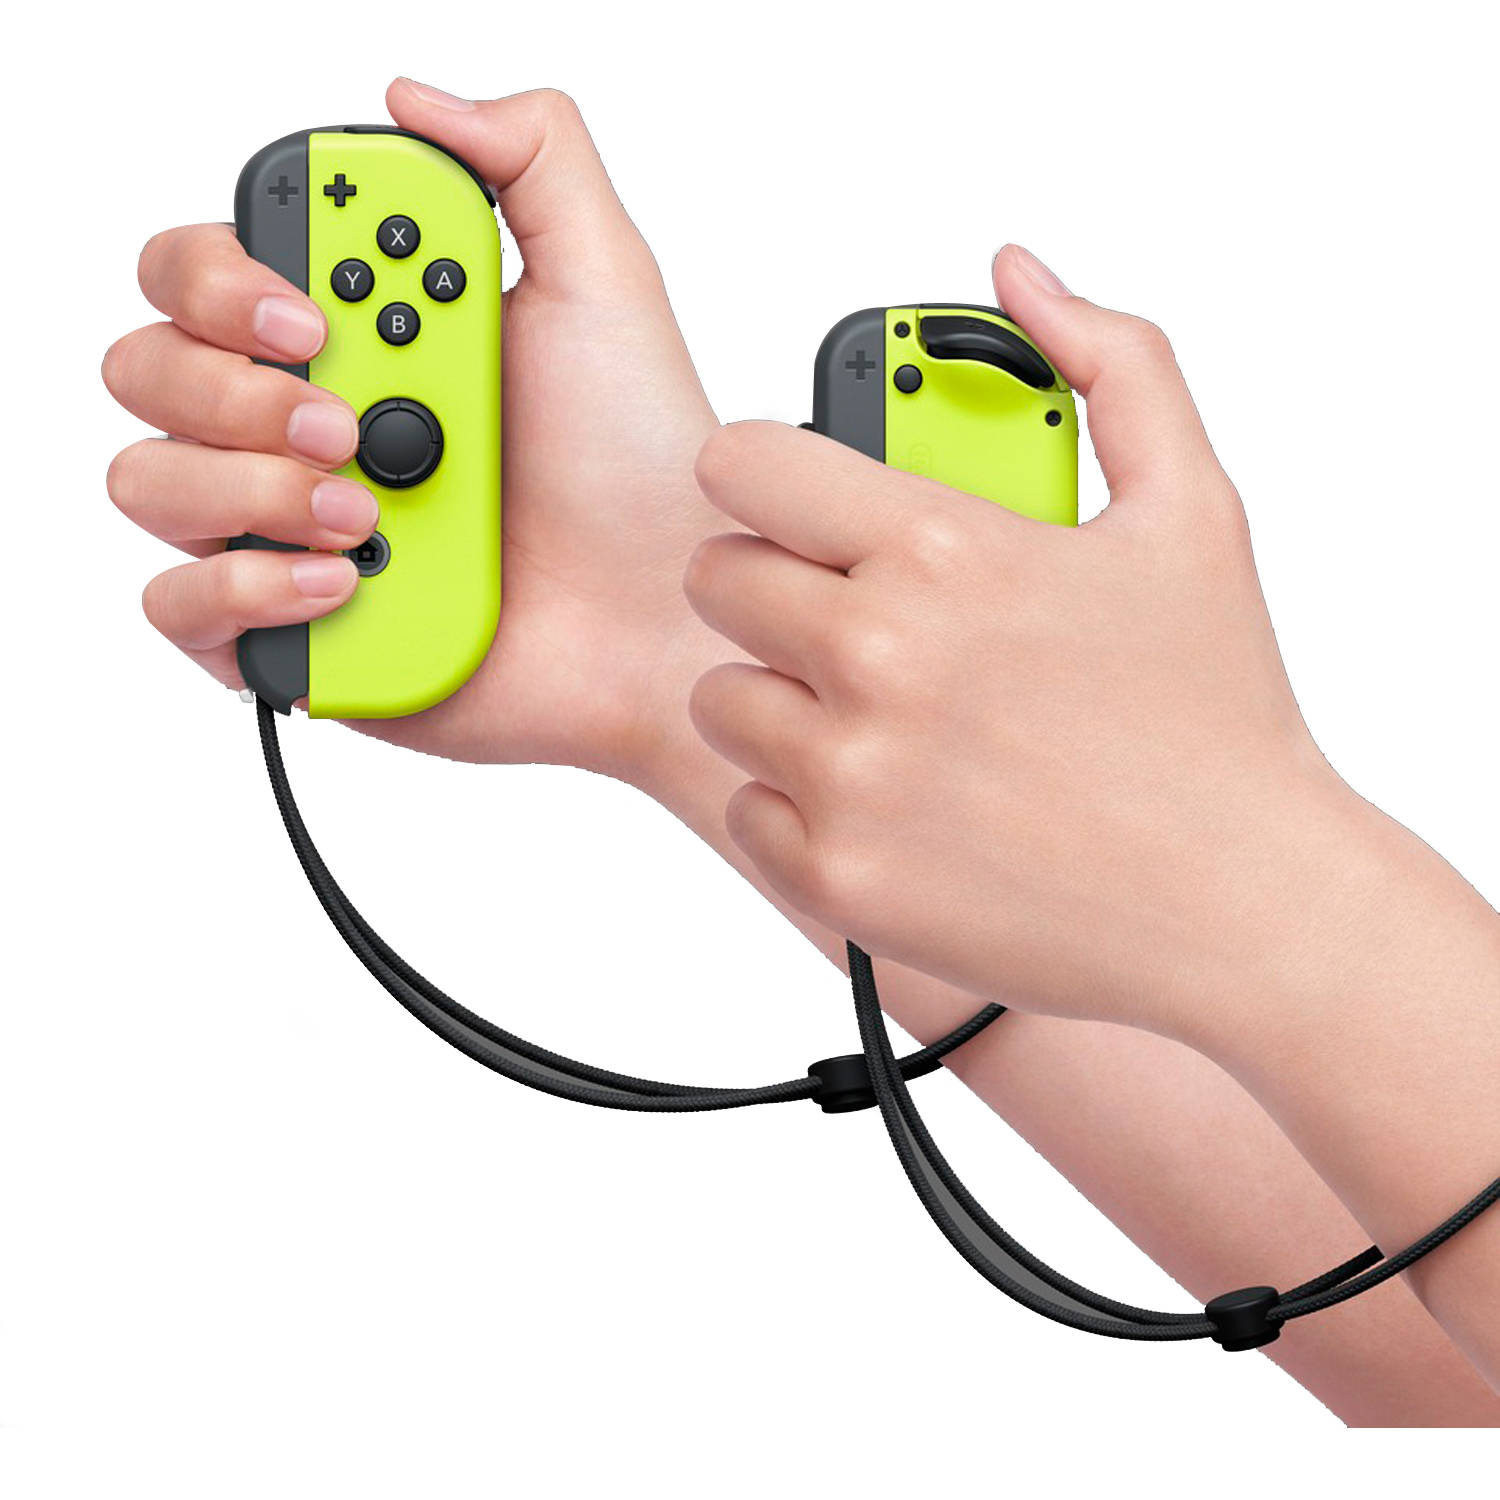 Nintendo Switch Joy-Con Pair, Neon Yellow - image 3 of 4